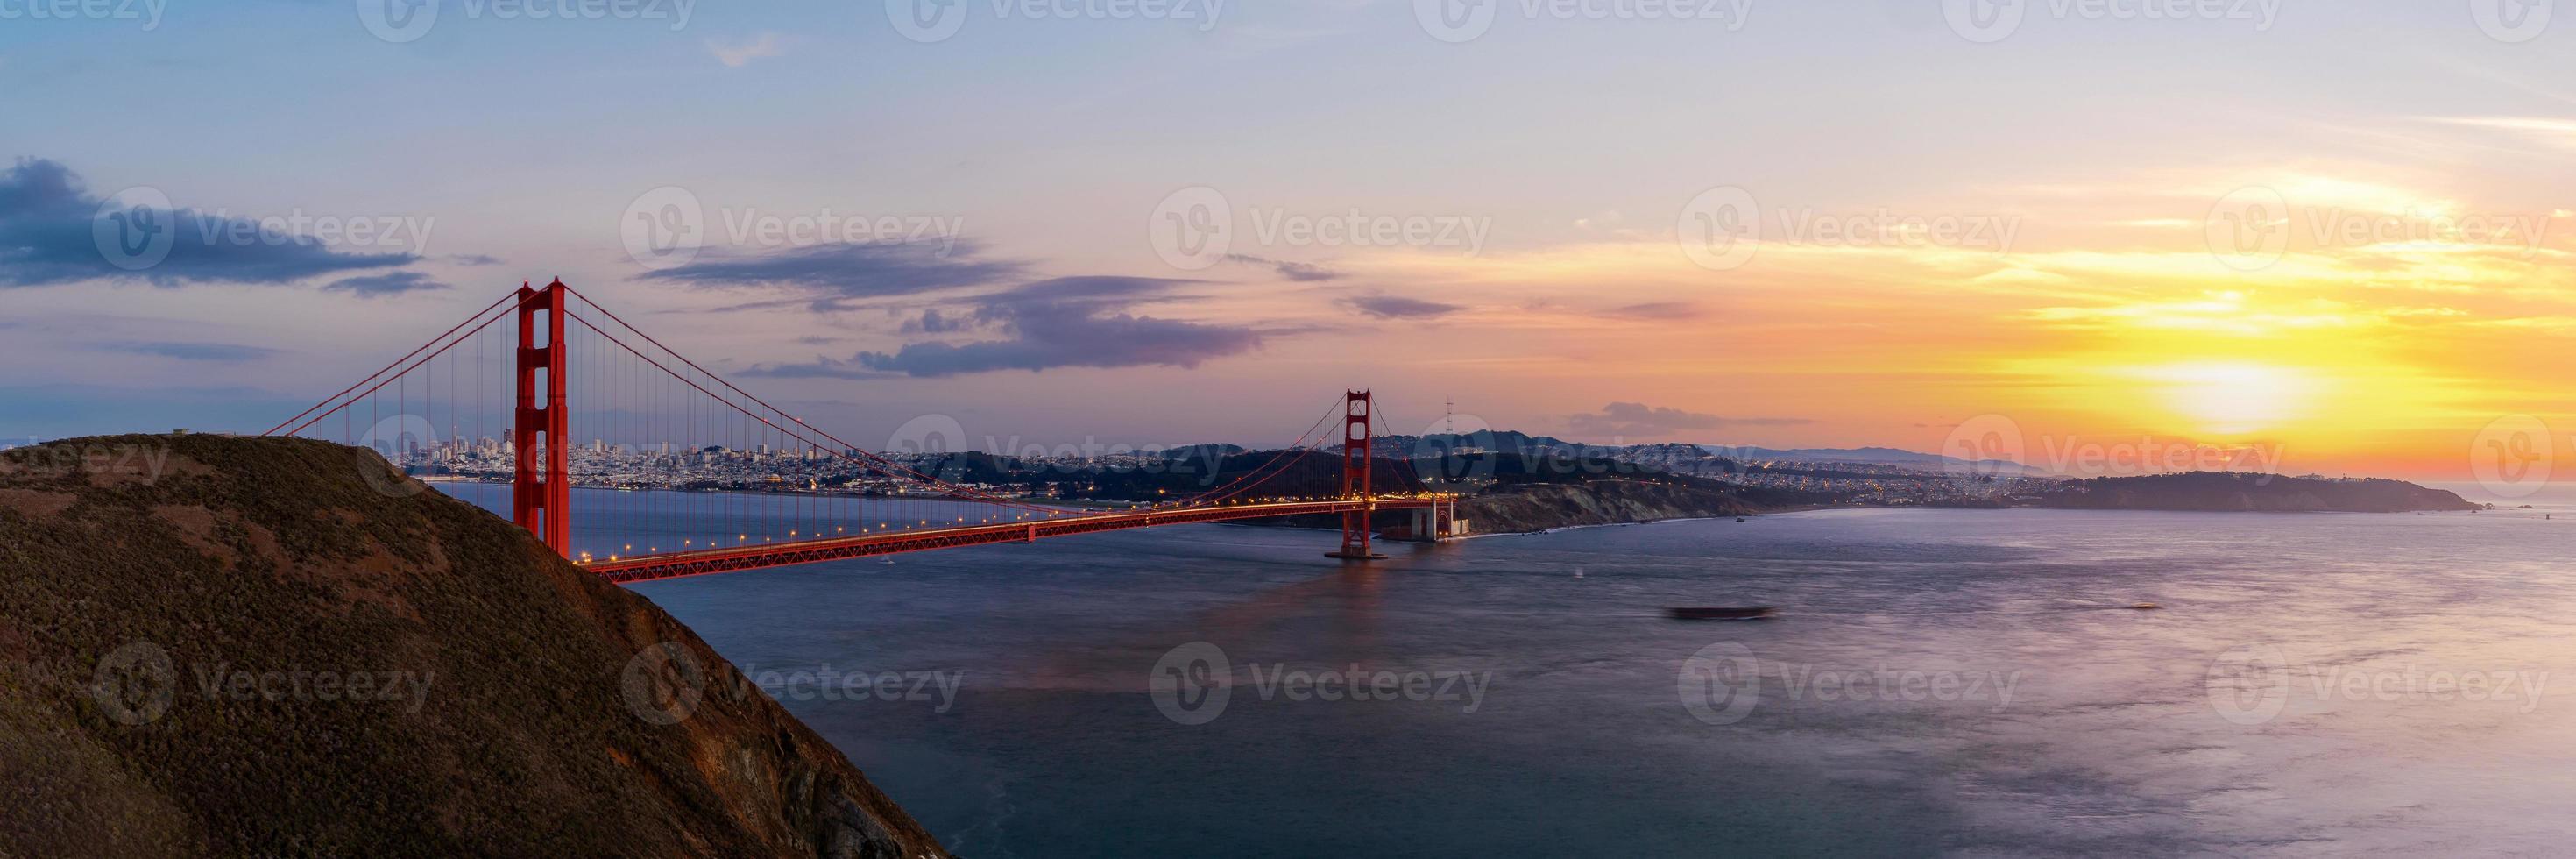 Vista panorámica del puente Golden Gate en el crepúsculo foto